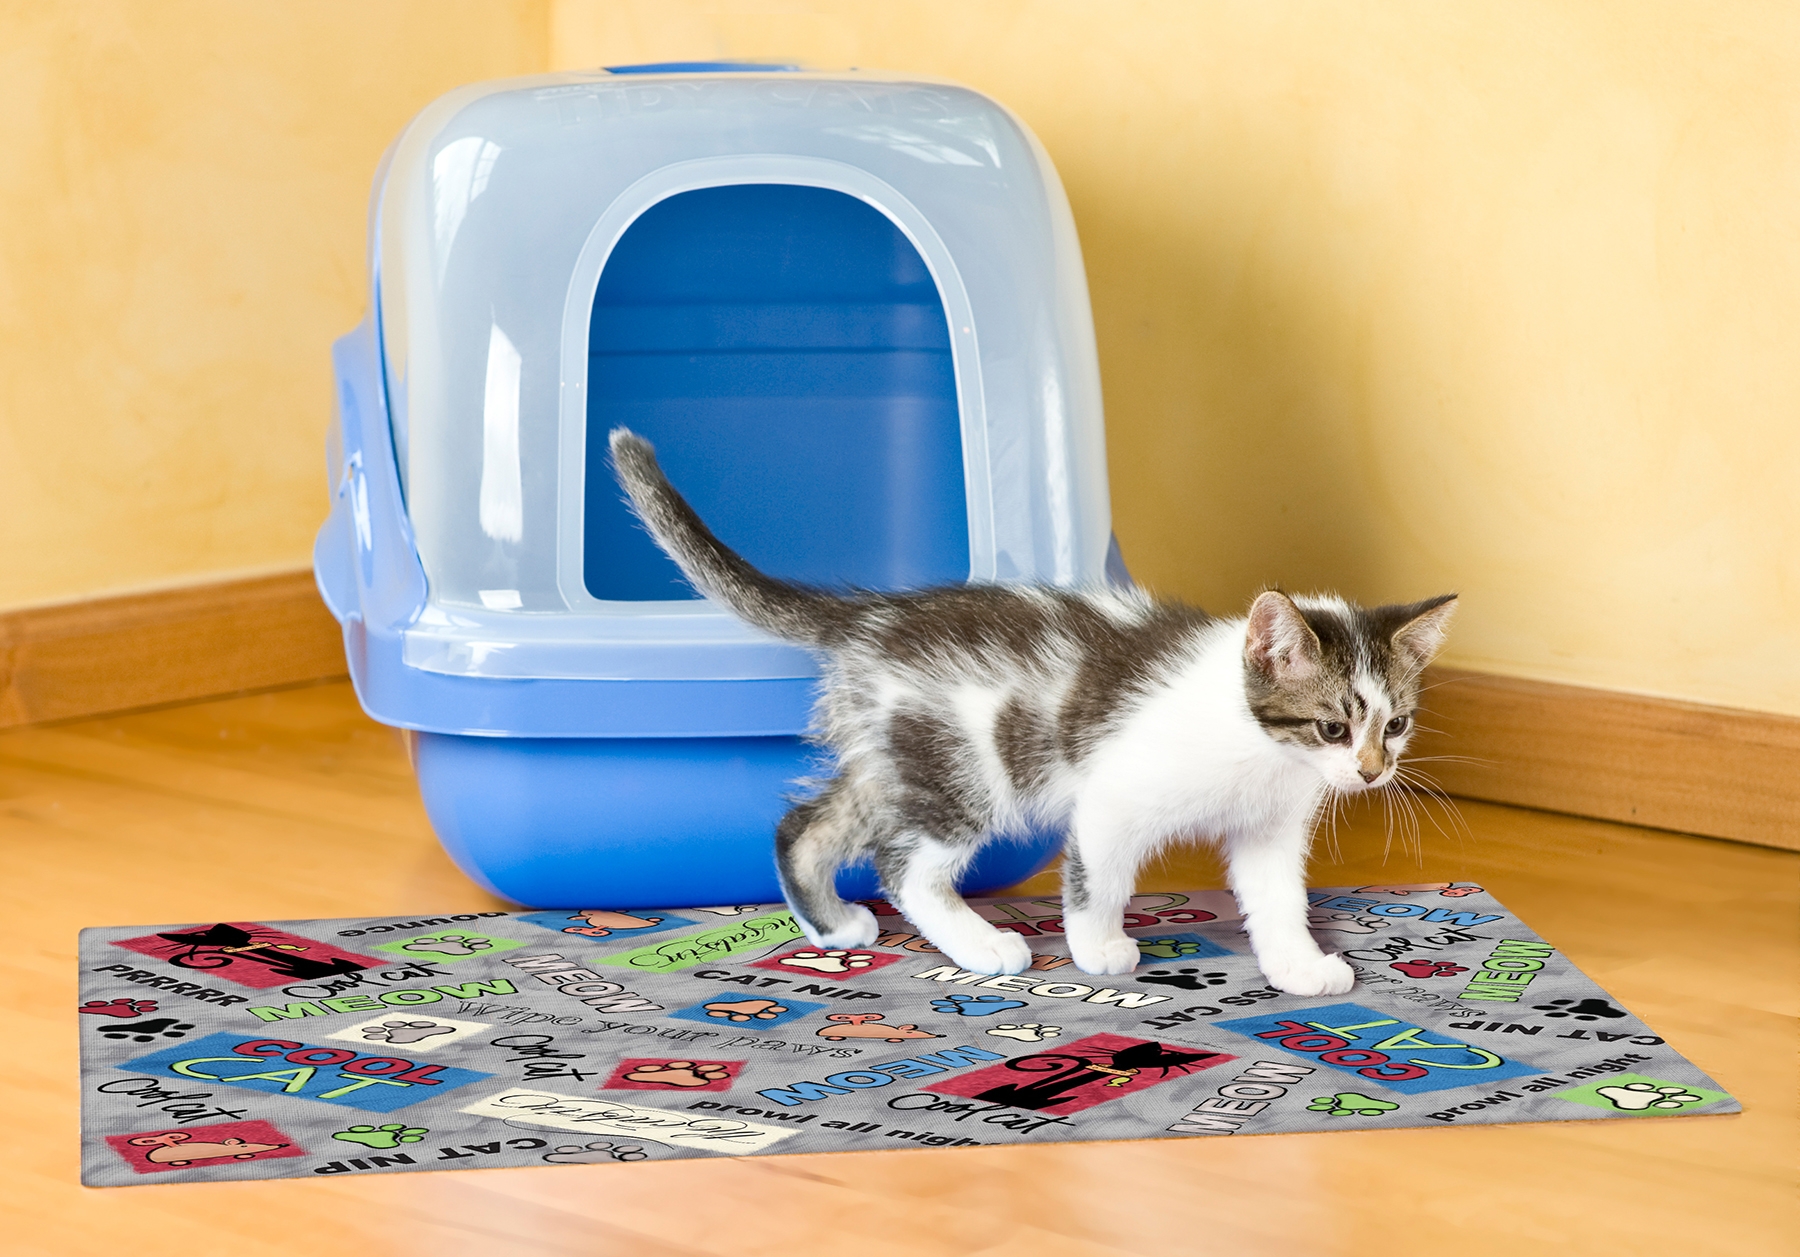 A kitten walks on the cat litter mat with a litter box behind it